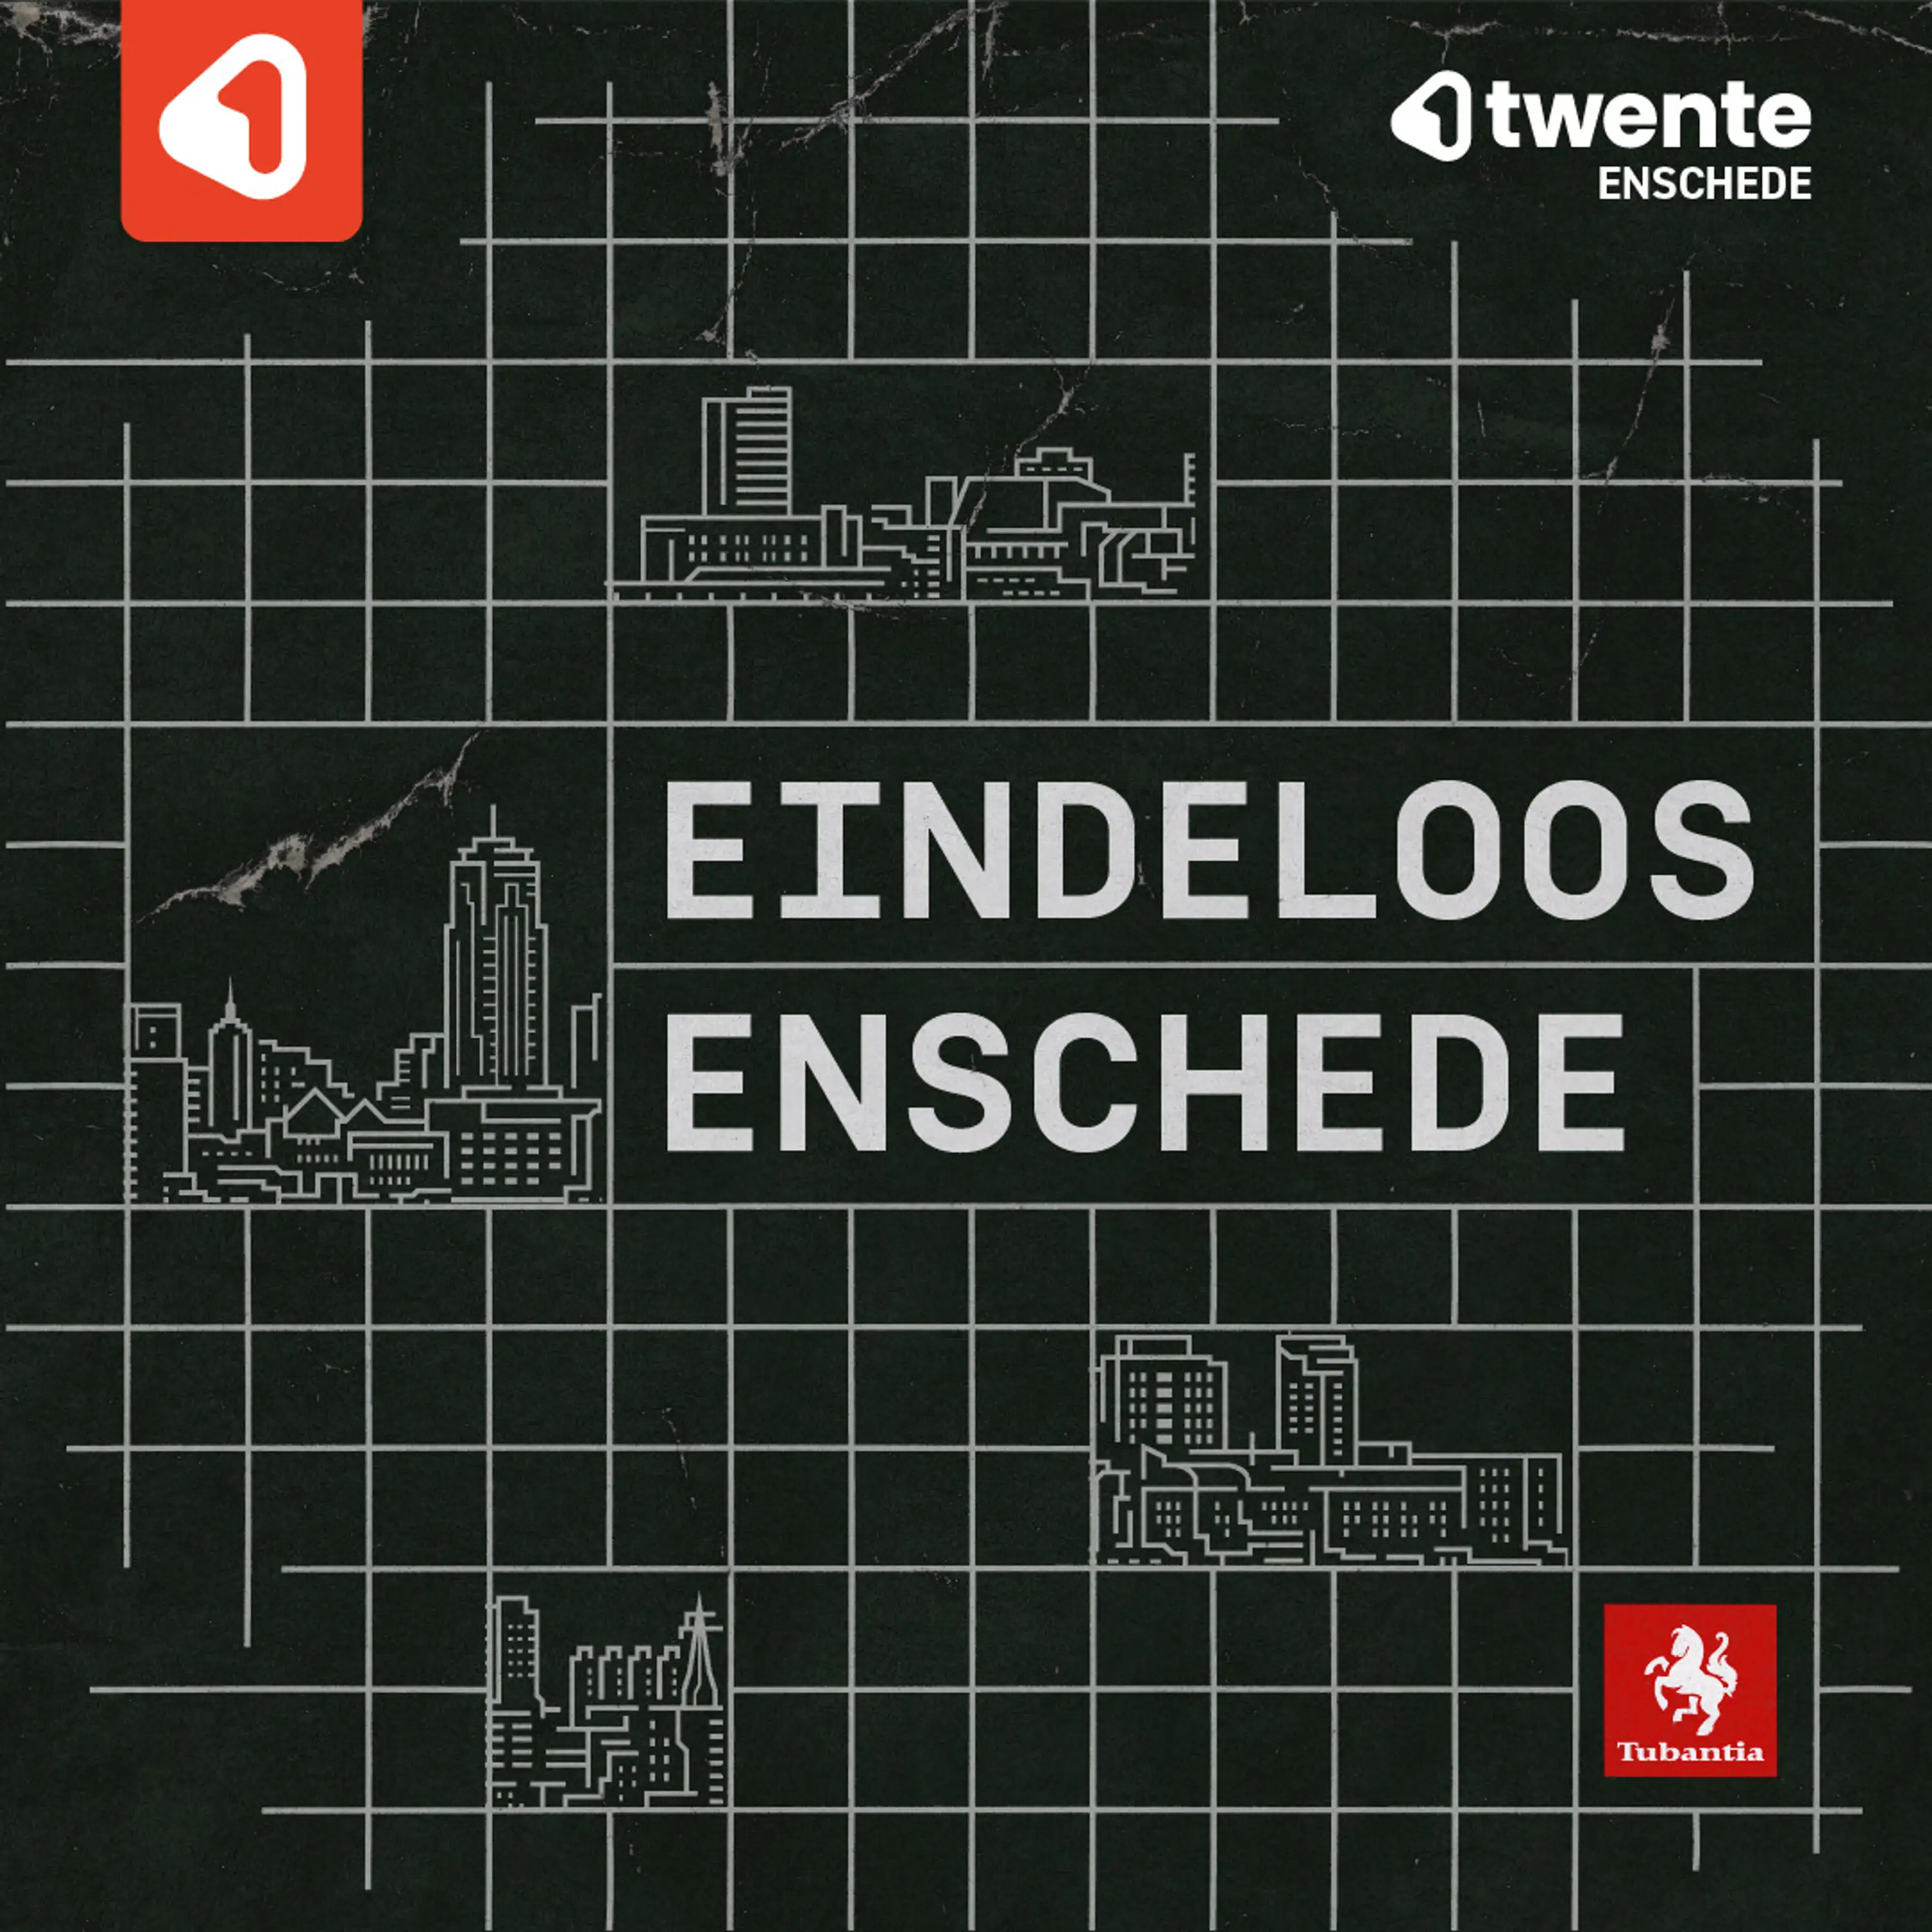 De terugkeer van Onno van Veldhuizen als burgemeester van Enschede